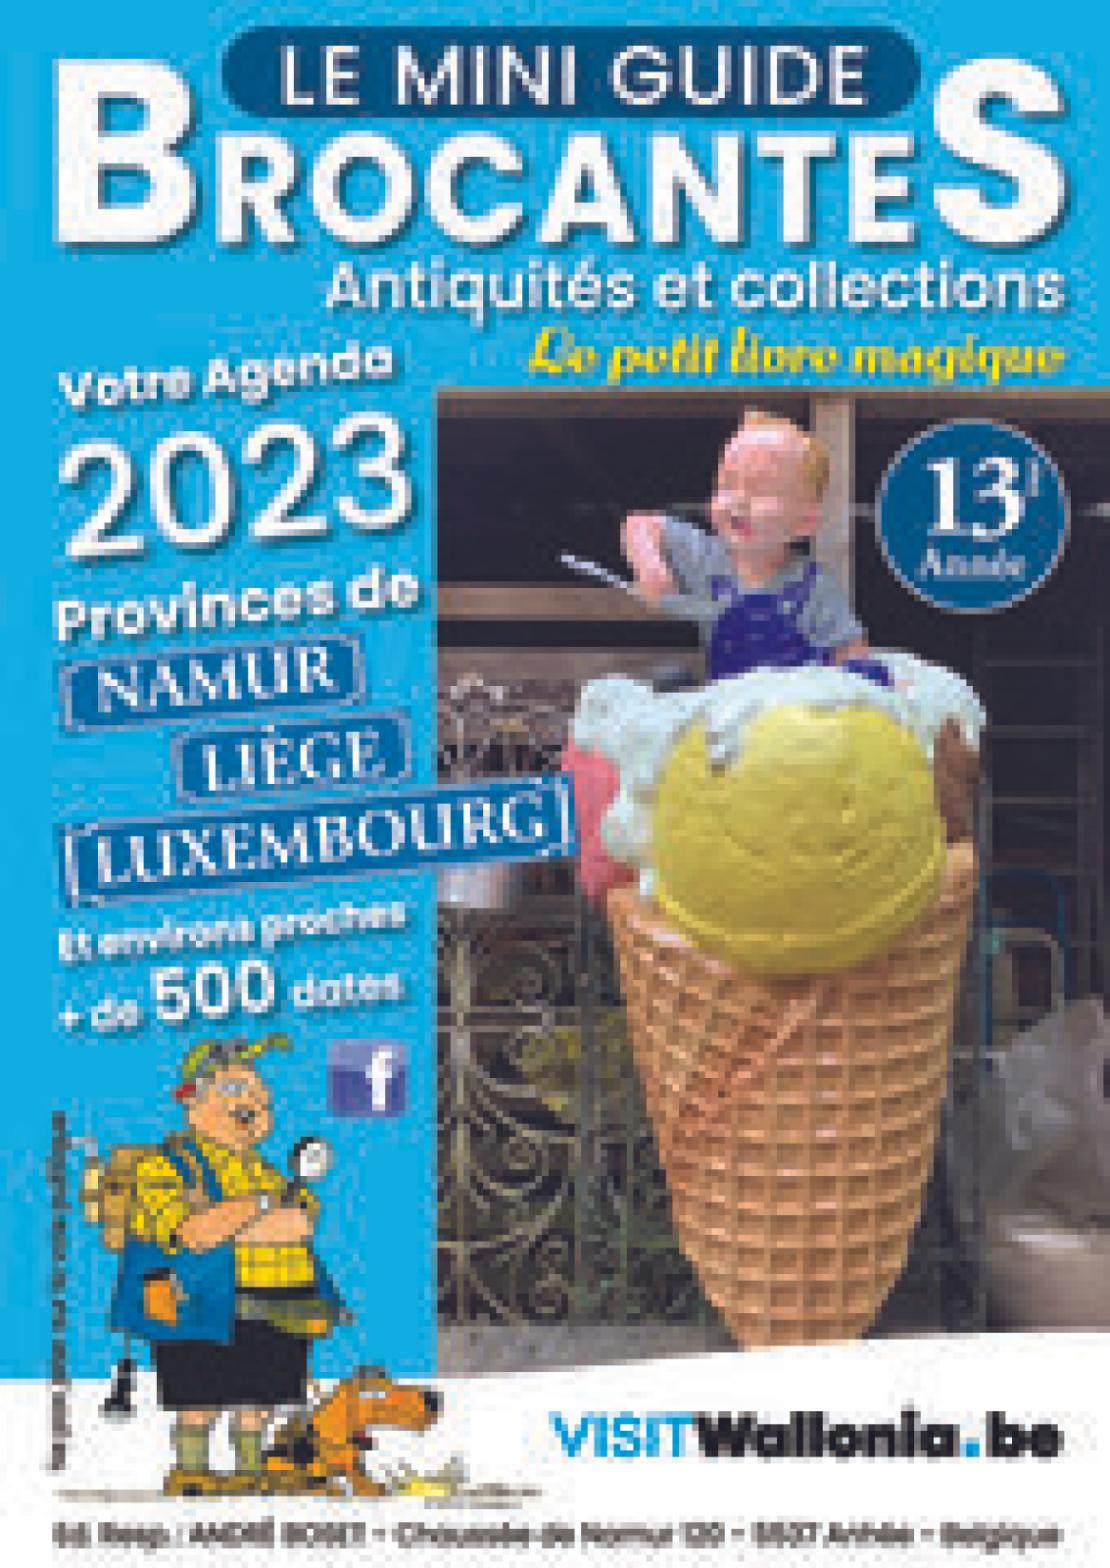 Titel des Mini-Guides Brocantes 2023 - Brocantes, antiquités et collections - Agenda 2023 Namur - Lüttich - Luxemburg